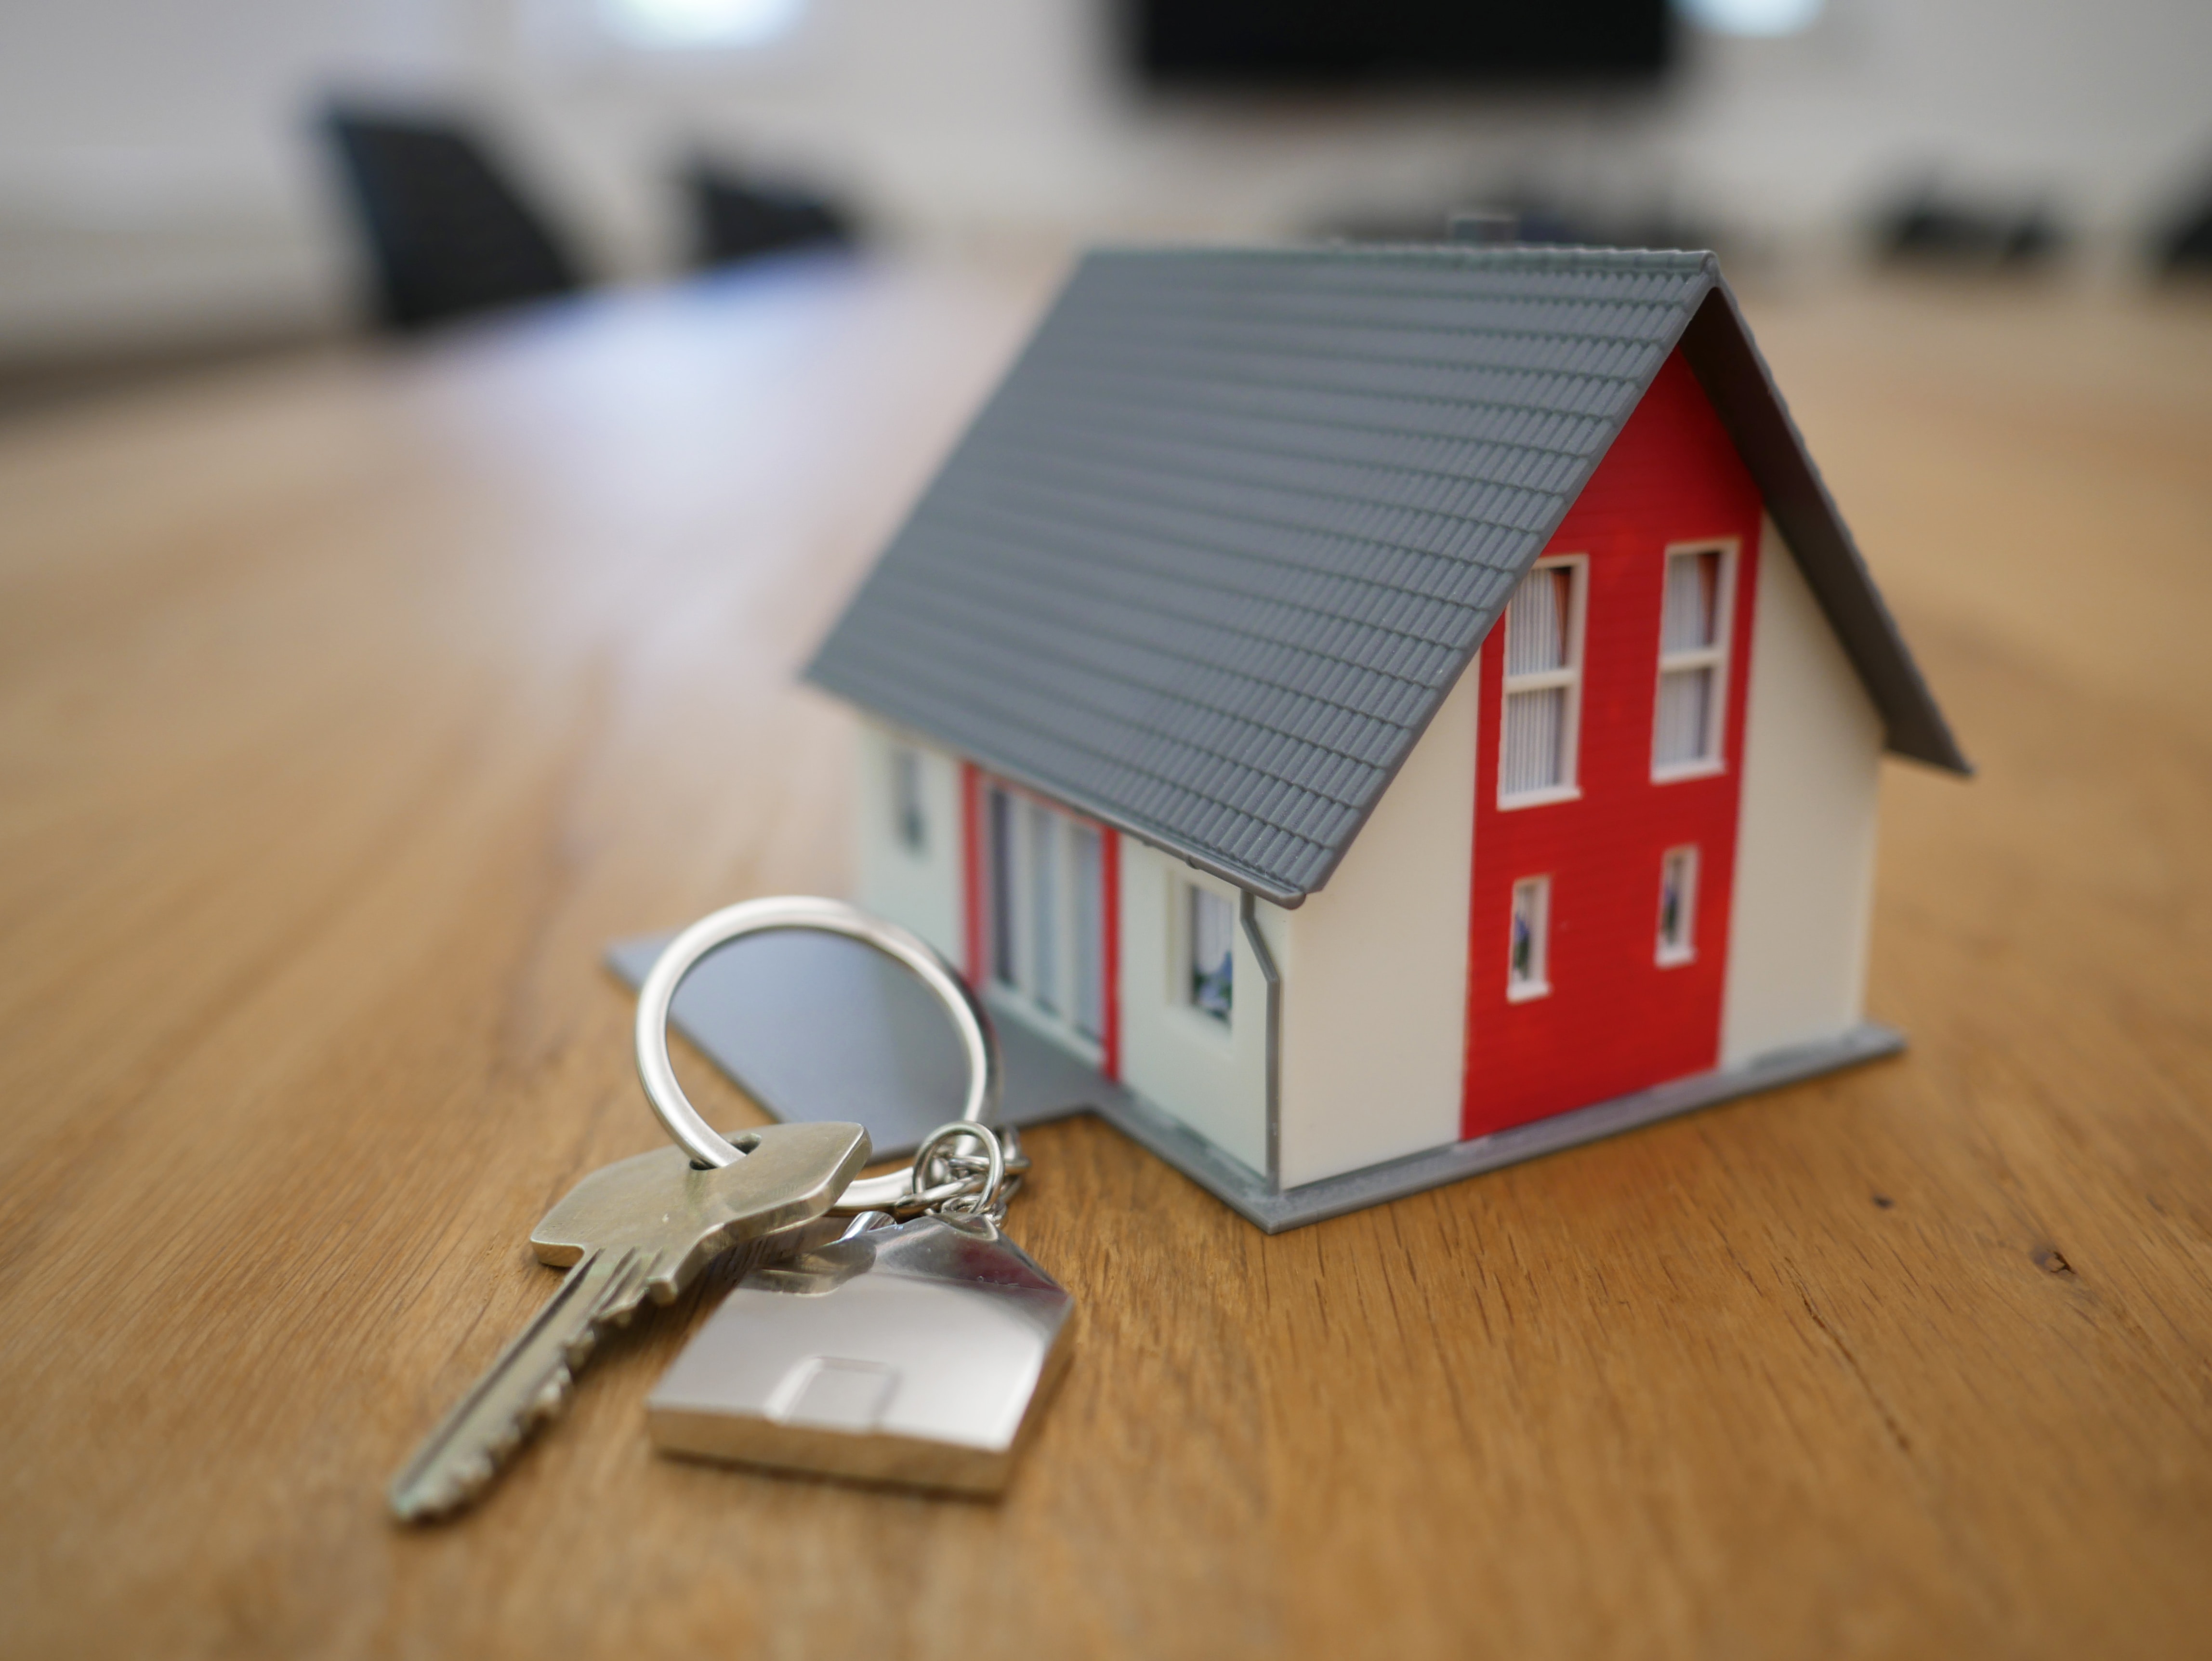 Mini house next to a set of house keys.